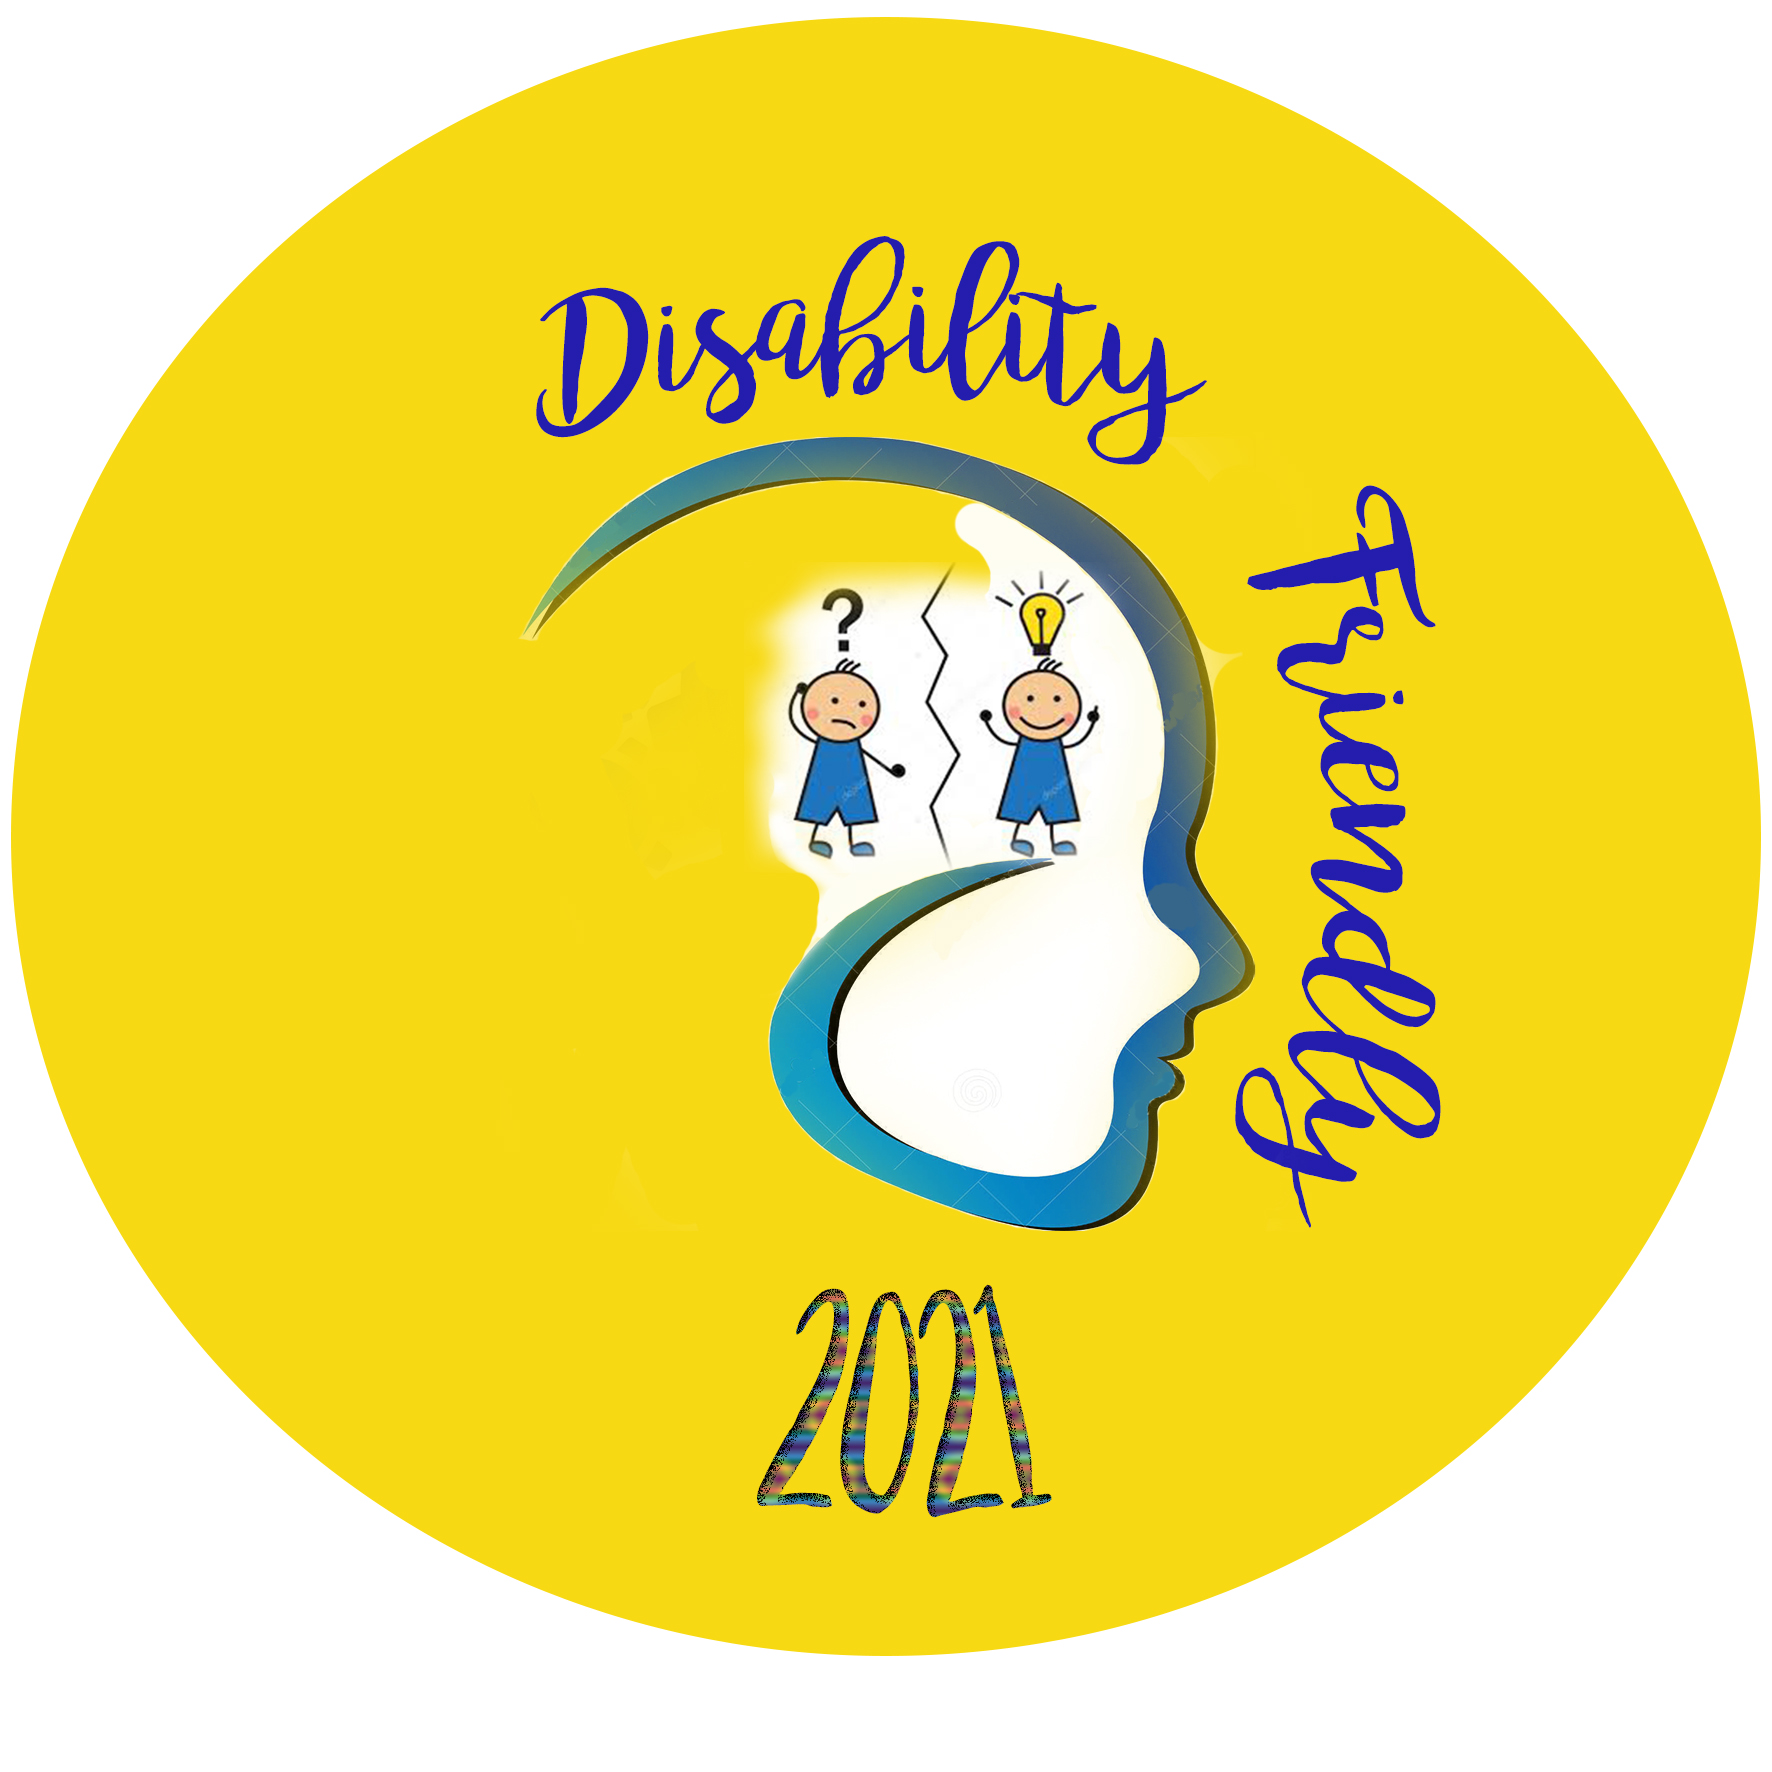 I.C. Sant’Angelo a Sasso: Disability Friendly e la Giornata Mondiale dell’autismo